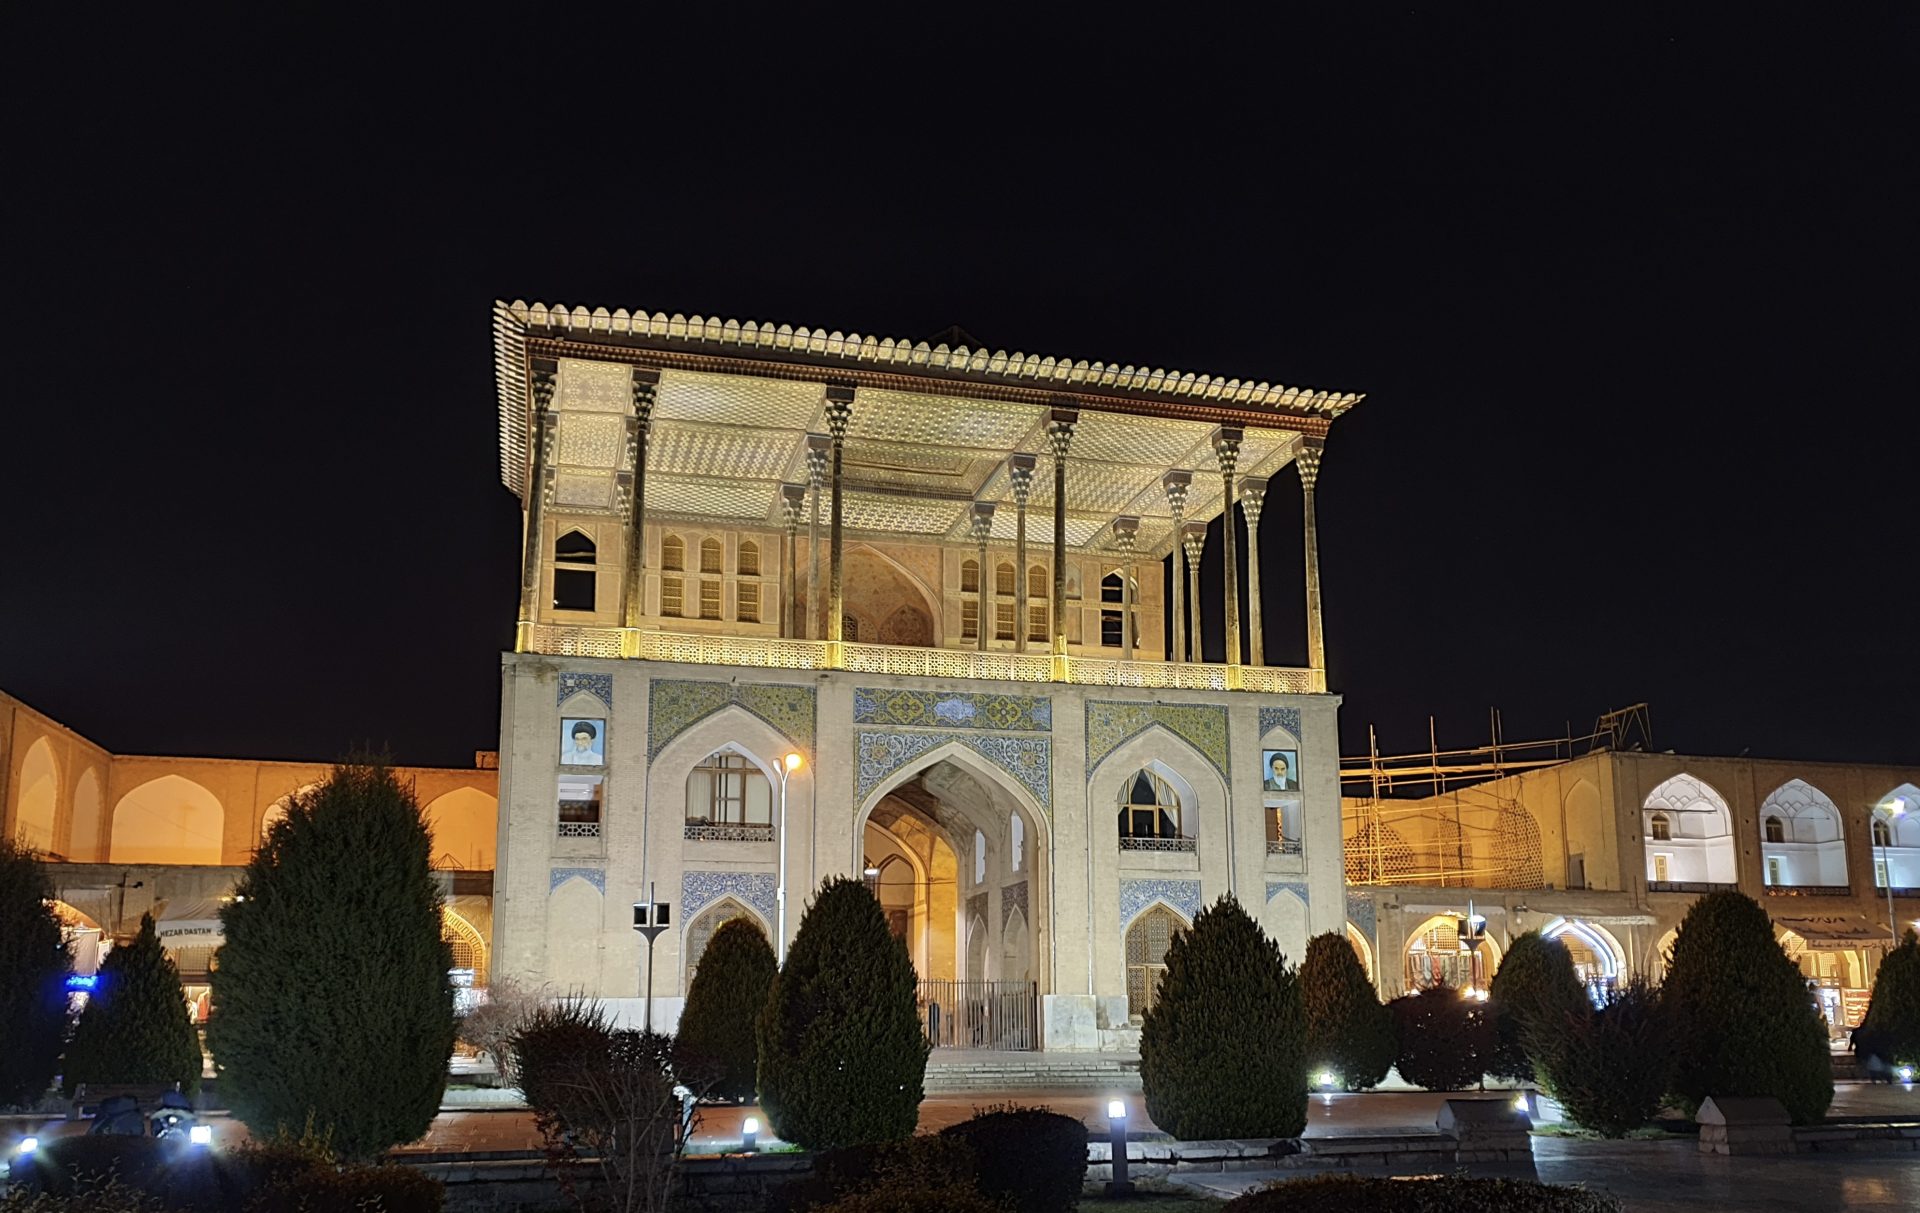 Ali Qapu Palace at night